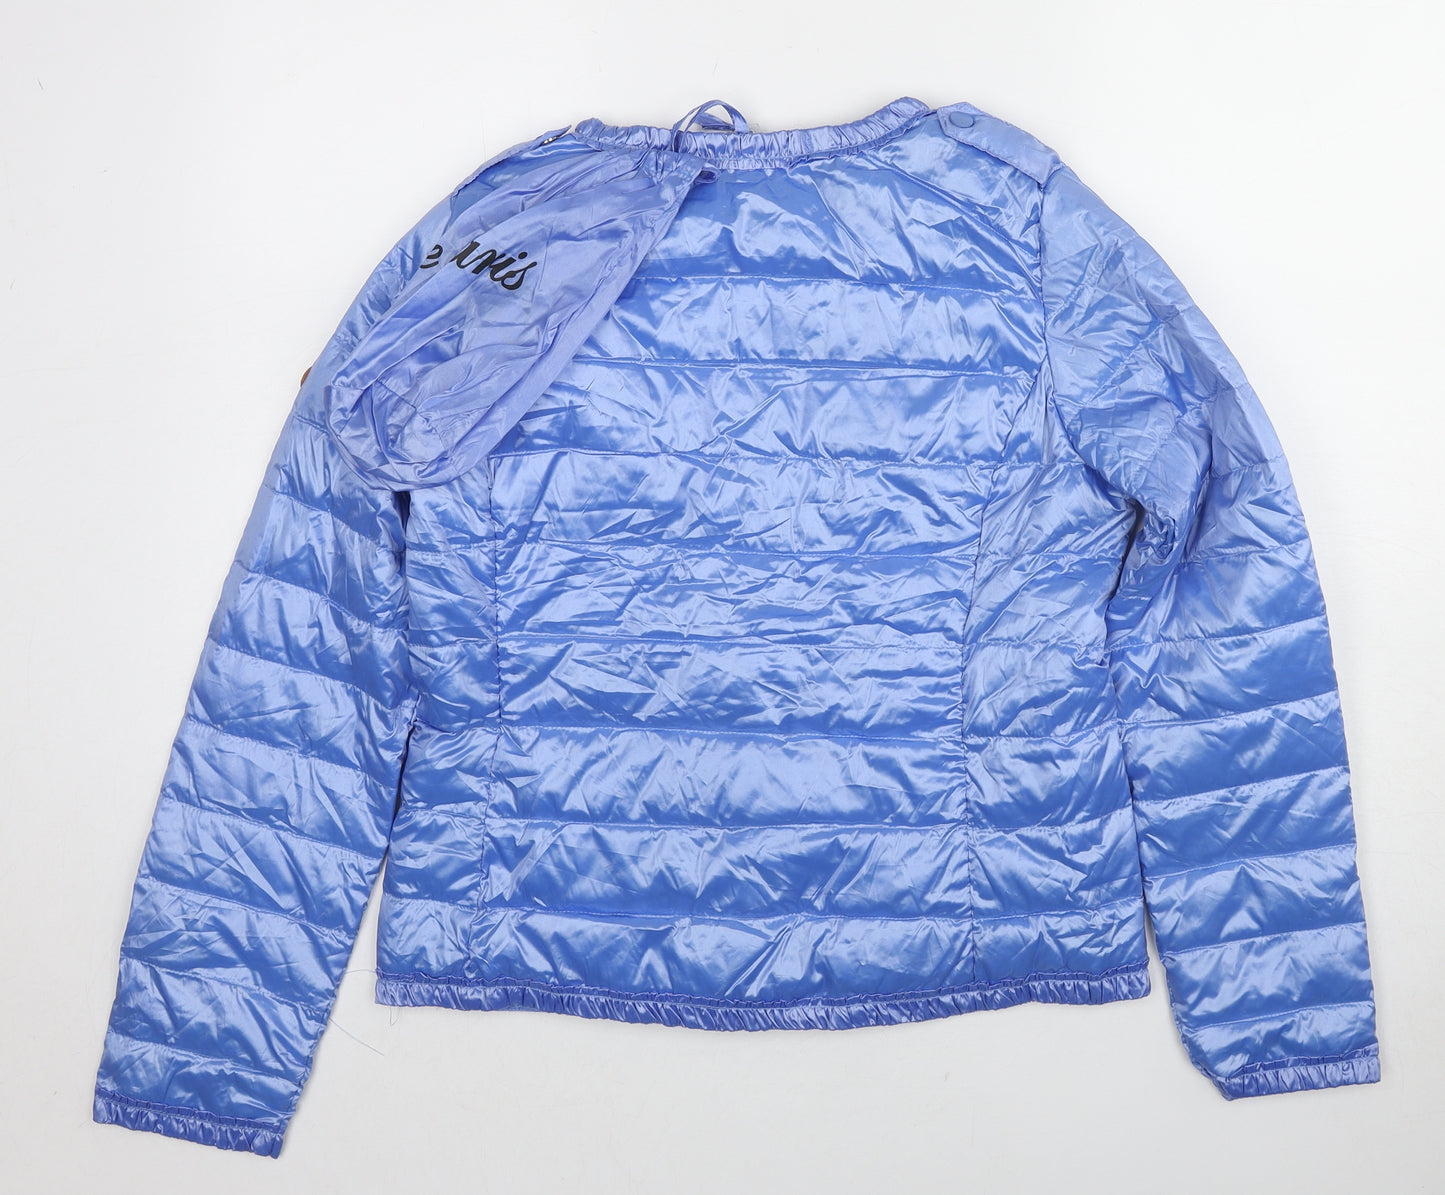 L'amie de Paris Womens Blue Quilted Jacket Size M Zip - Rain Proof Bag Included